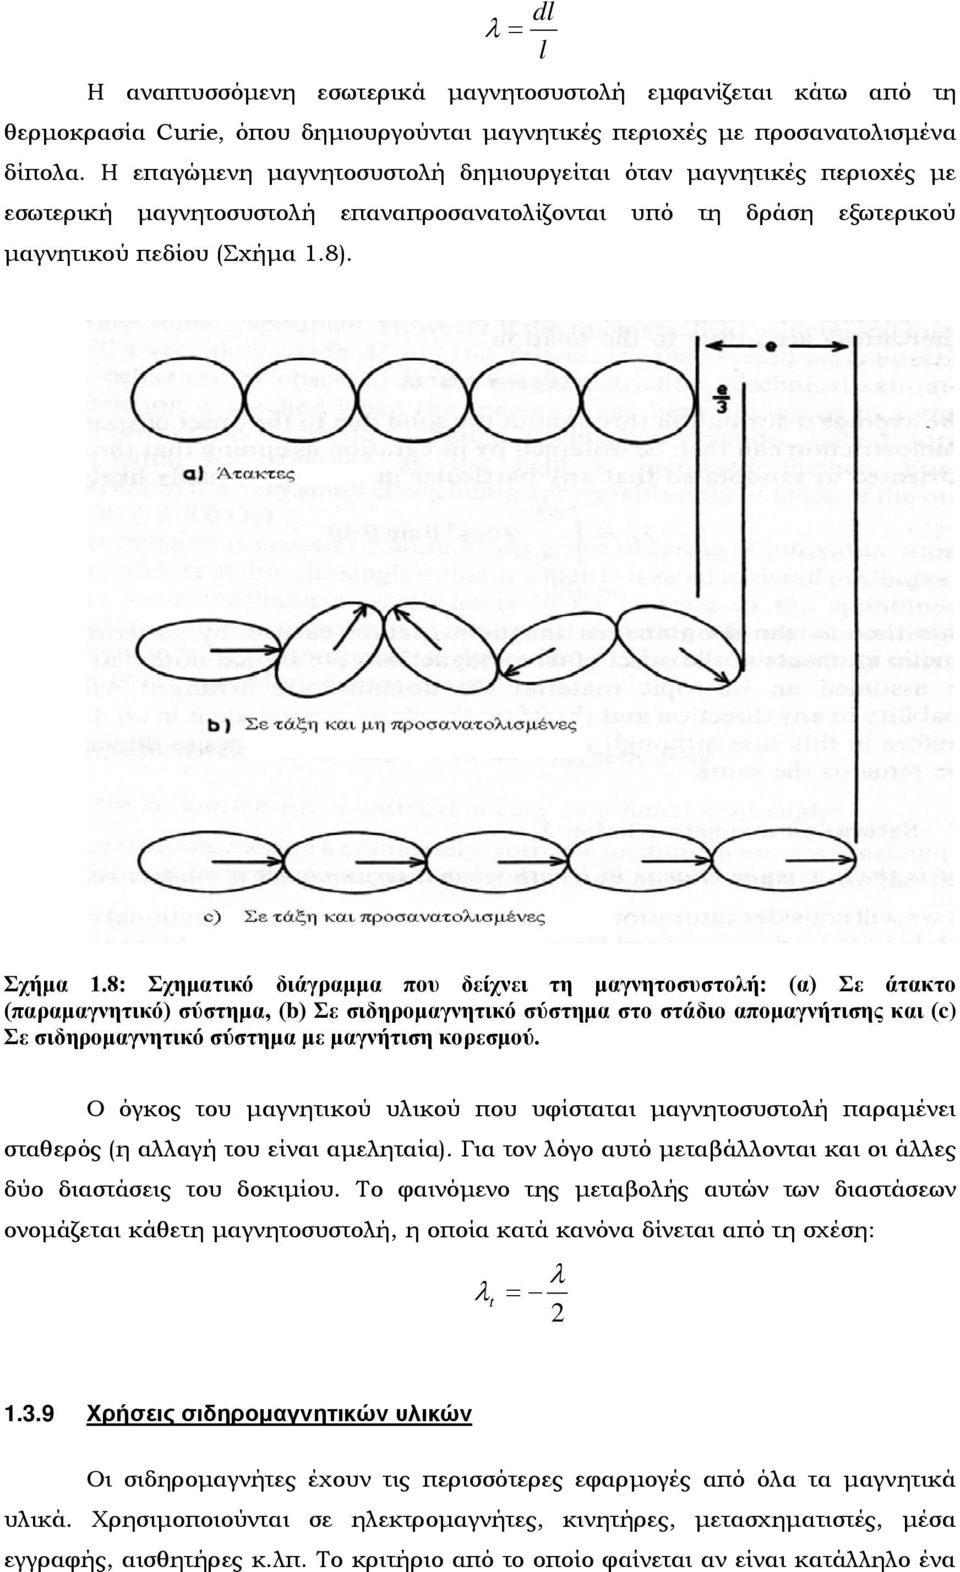 8: Σχηματικό διάγραμμα που δείχνει τη μαγνητοσυστολή: (α) Σε άτακτο (παραμαγνητικό) σύστημα, (b) Σε σιδηρομαγνητικό σύστημα στο στάδιο απομαγνήτισης και (c) Σε σιδηρομαγνητικό σύστημα με μαγνήτιση